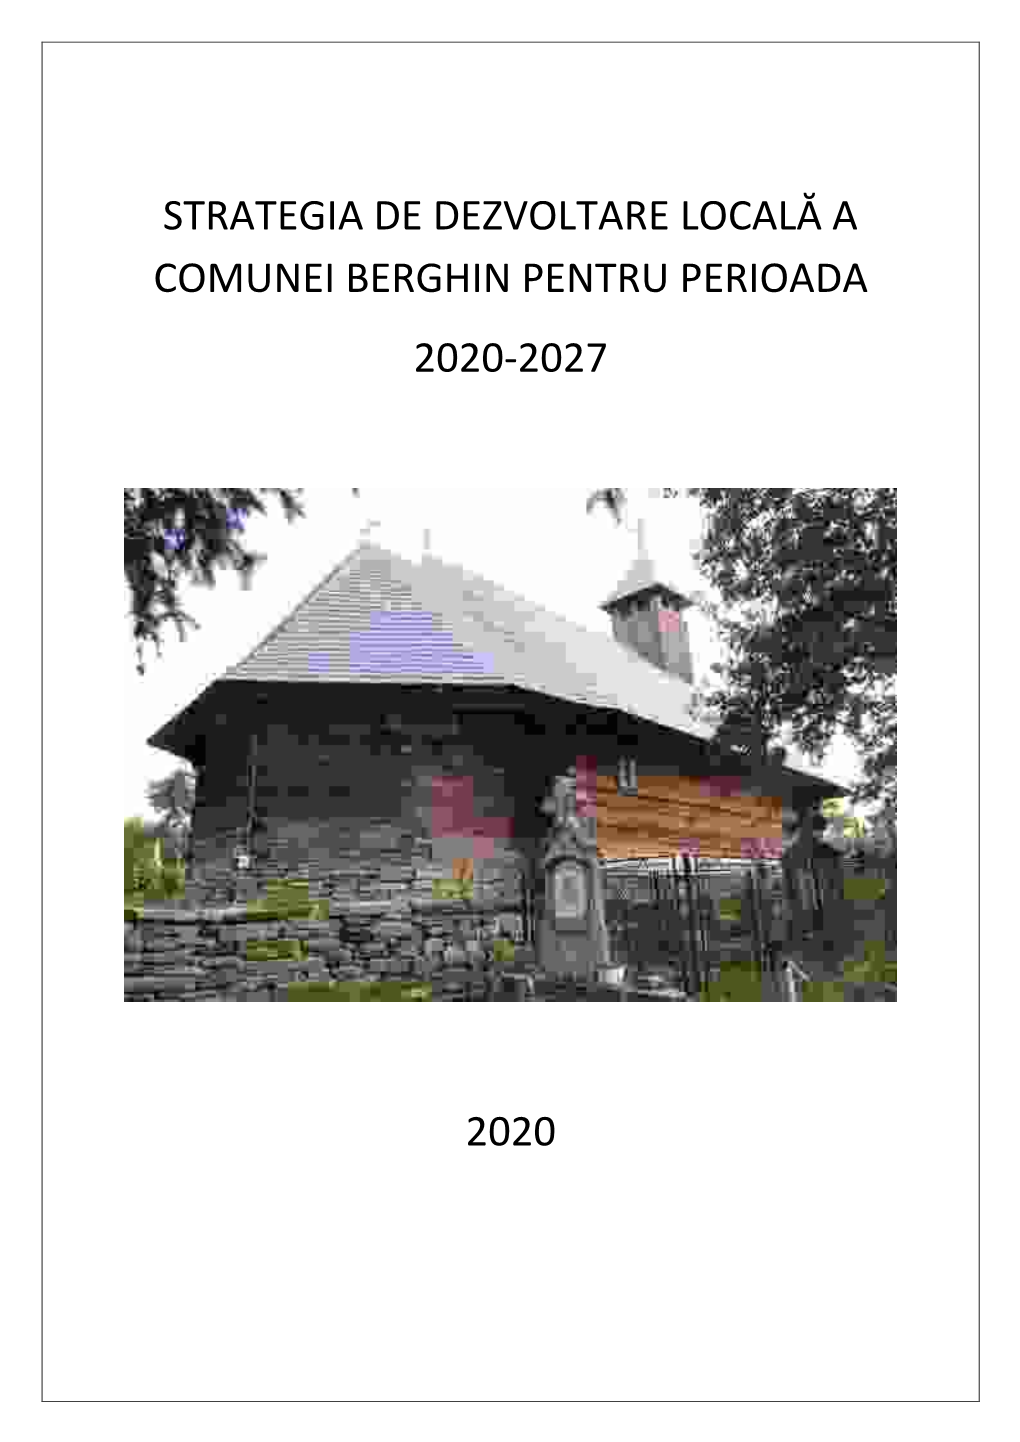 Strategia De Dezvoltare Locală a Comunei Berghin Pentru Perioada 2020-2027